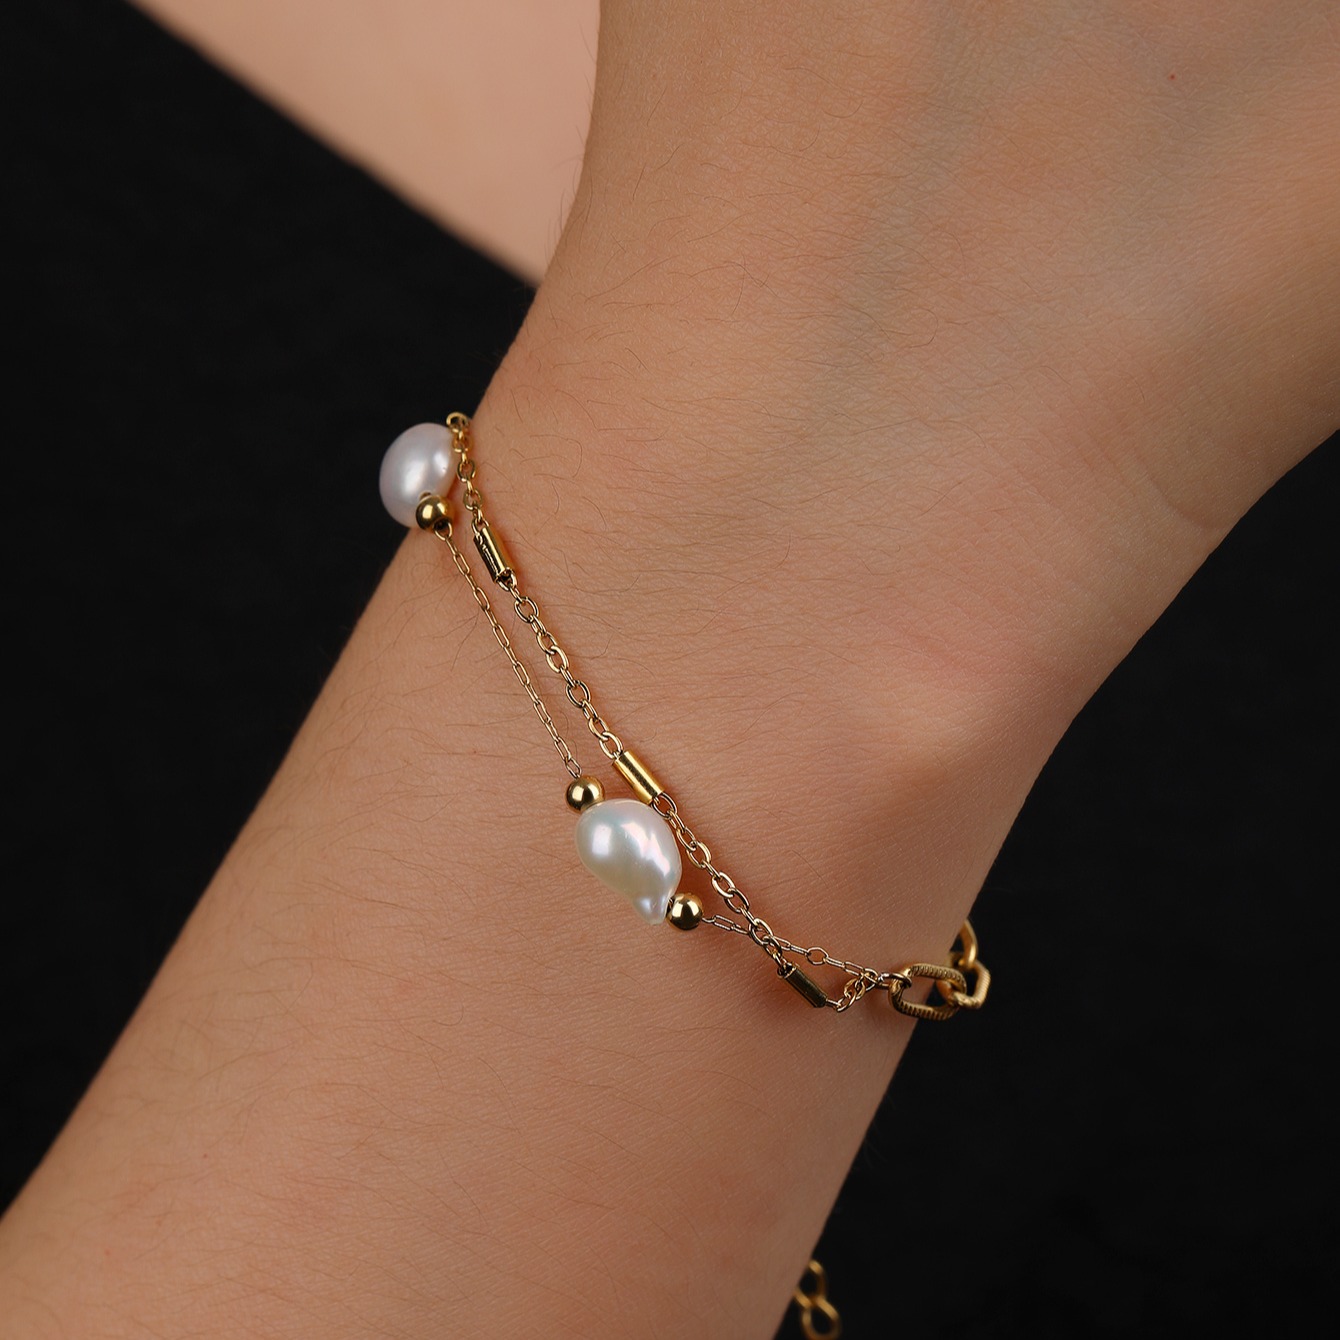 欧美流行时尚简约人工珍珠双链拼接手链